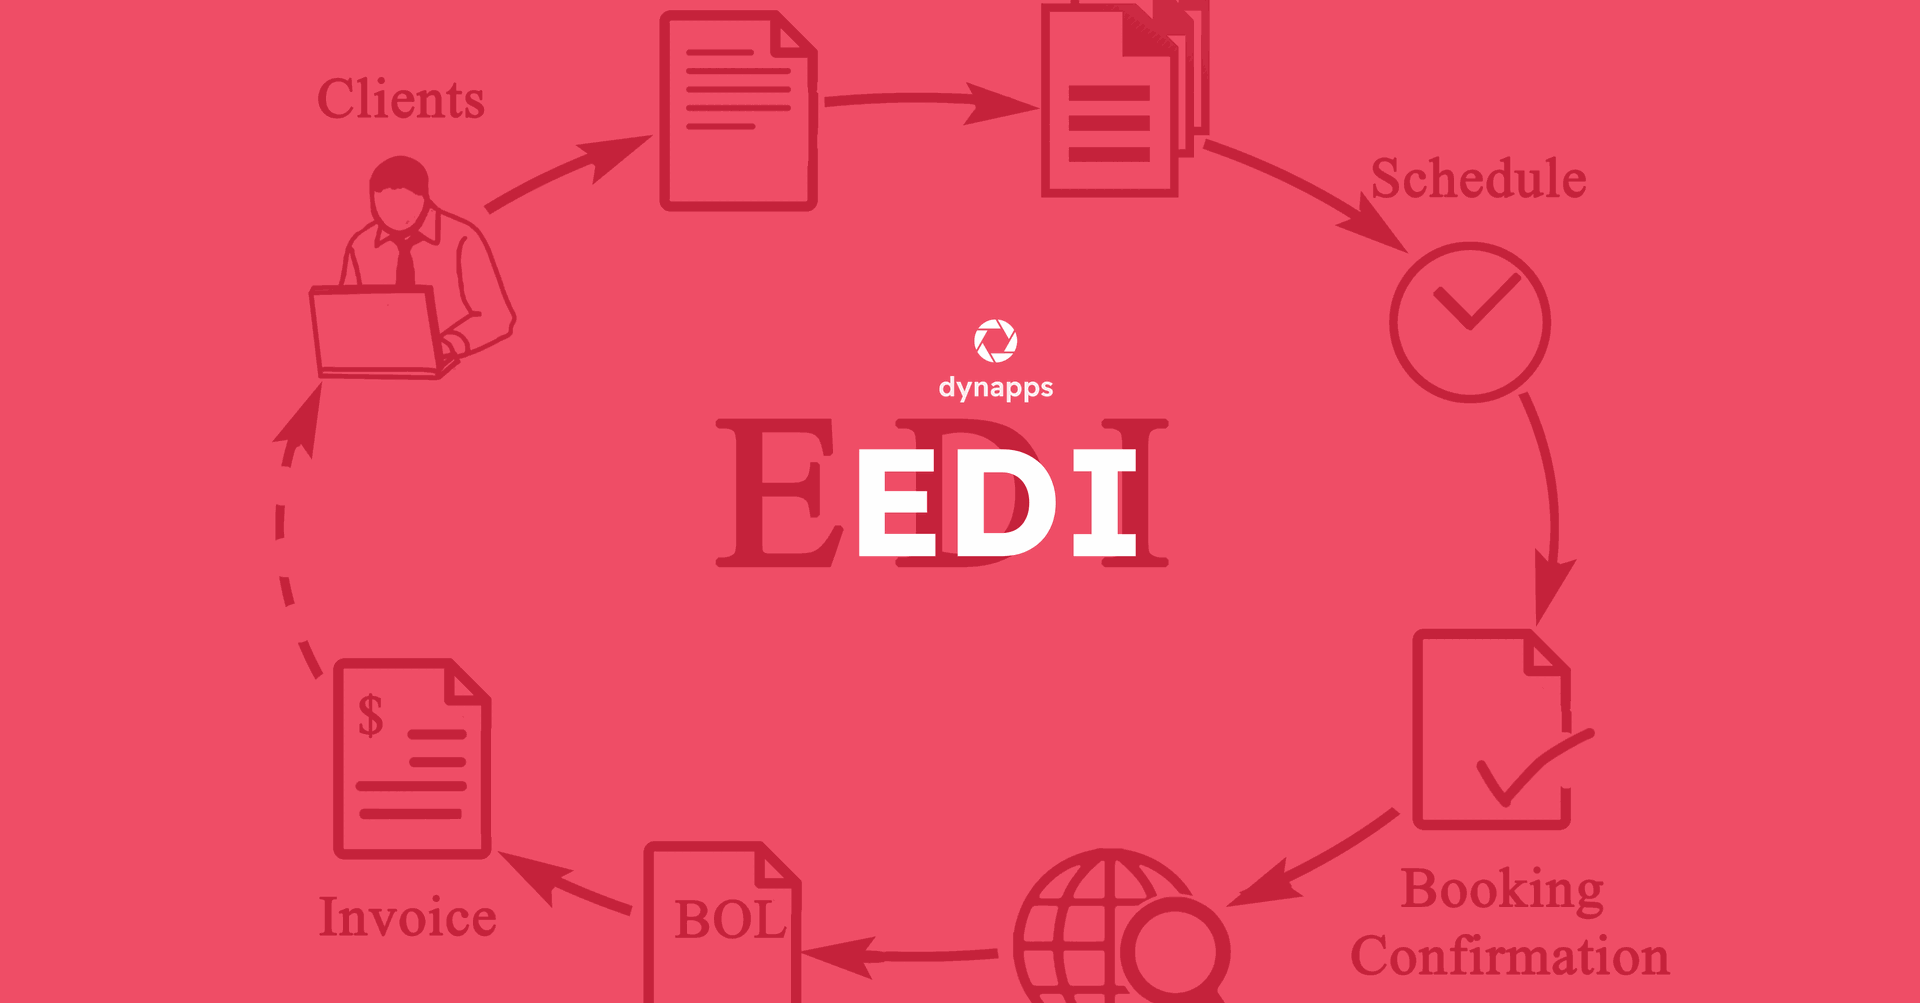 Odoo's EDI module